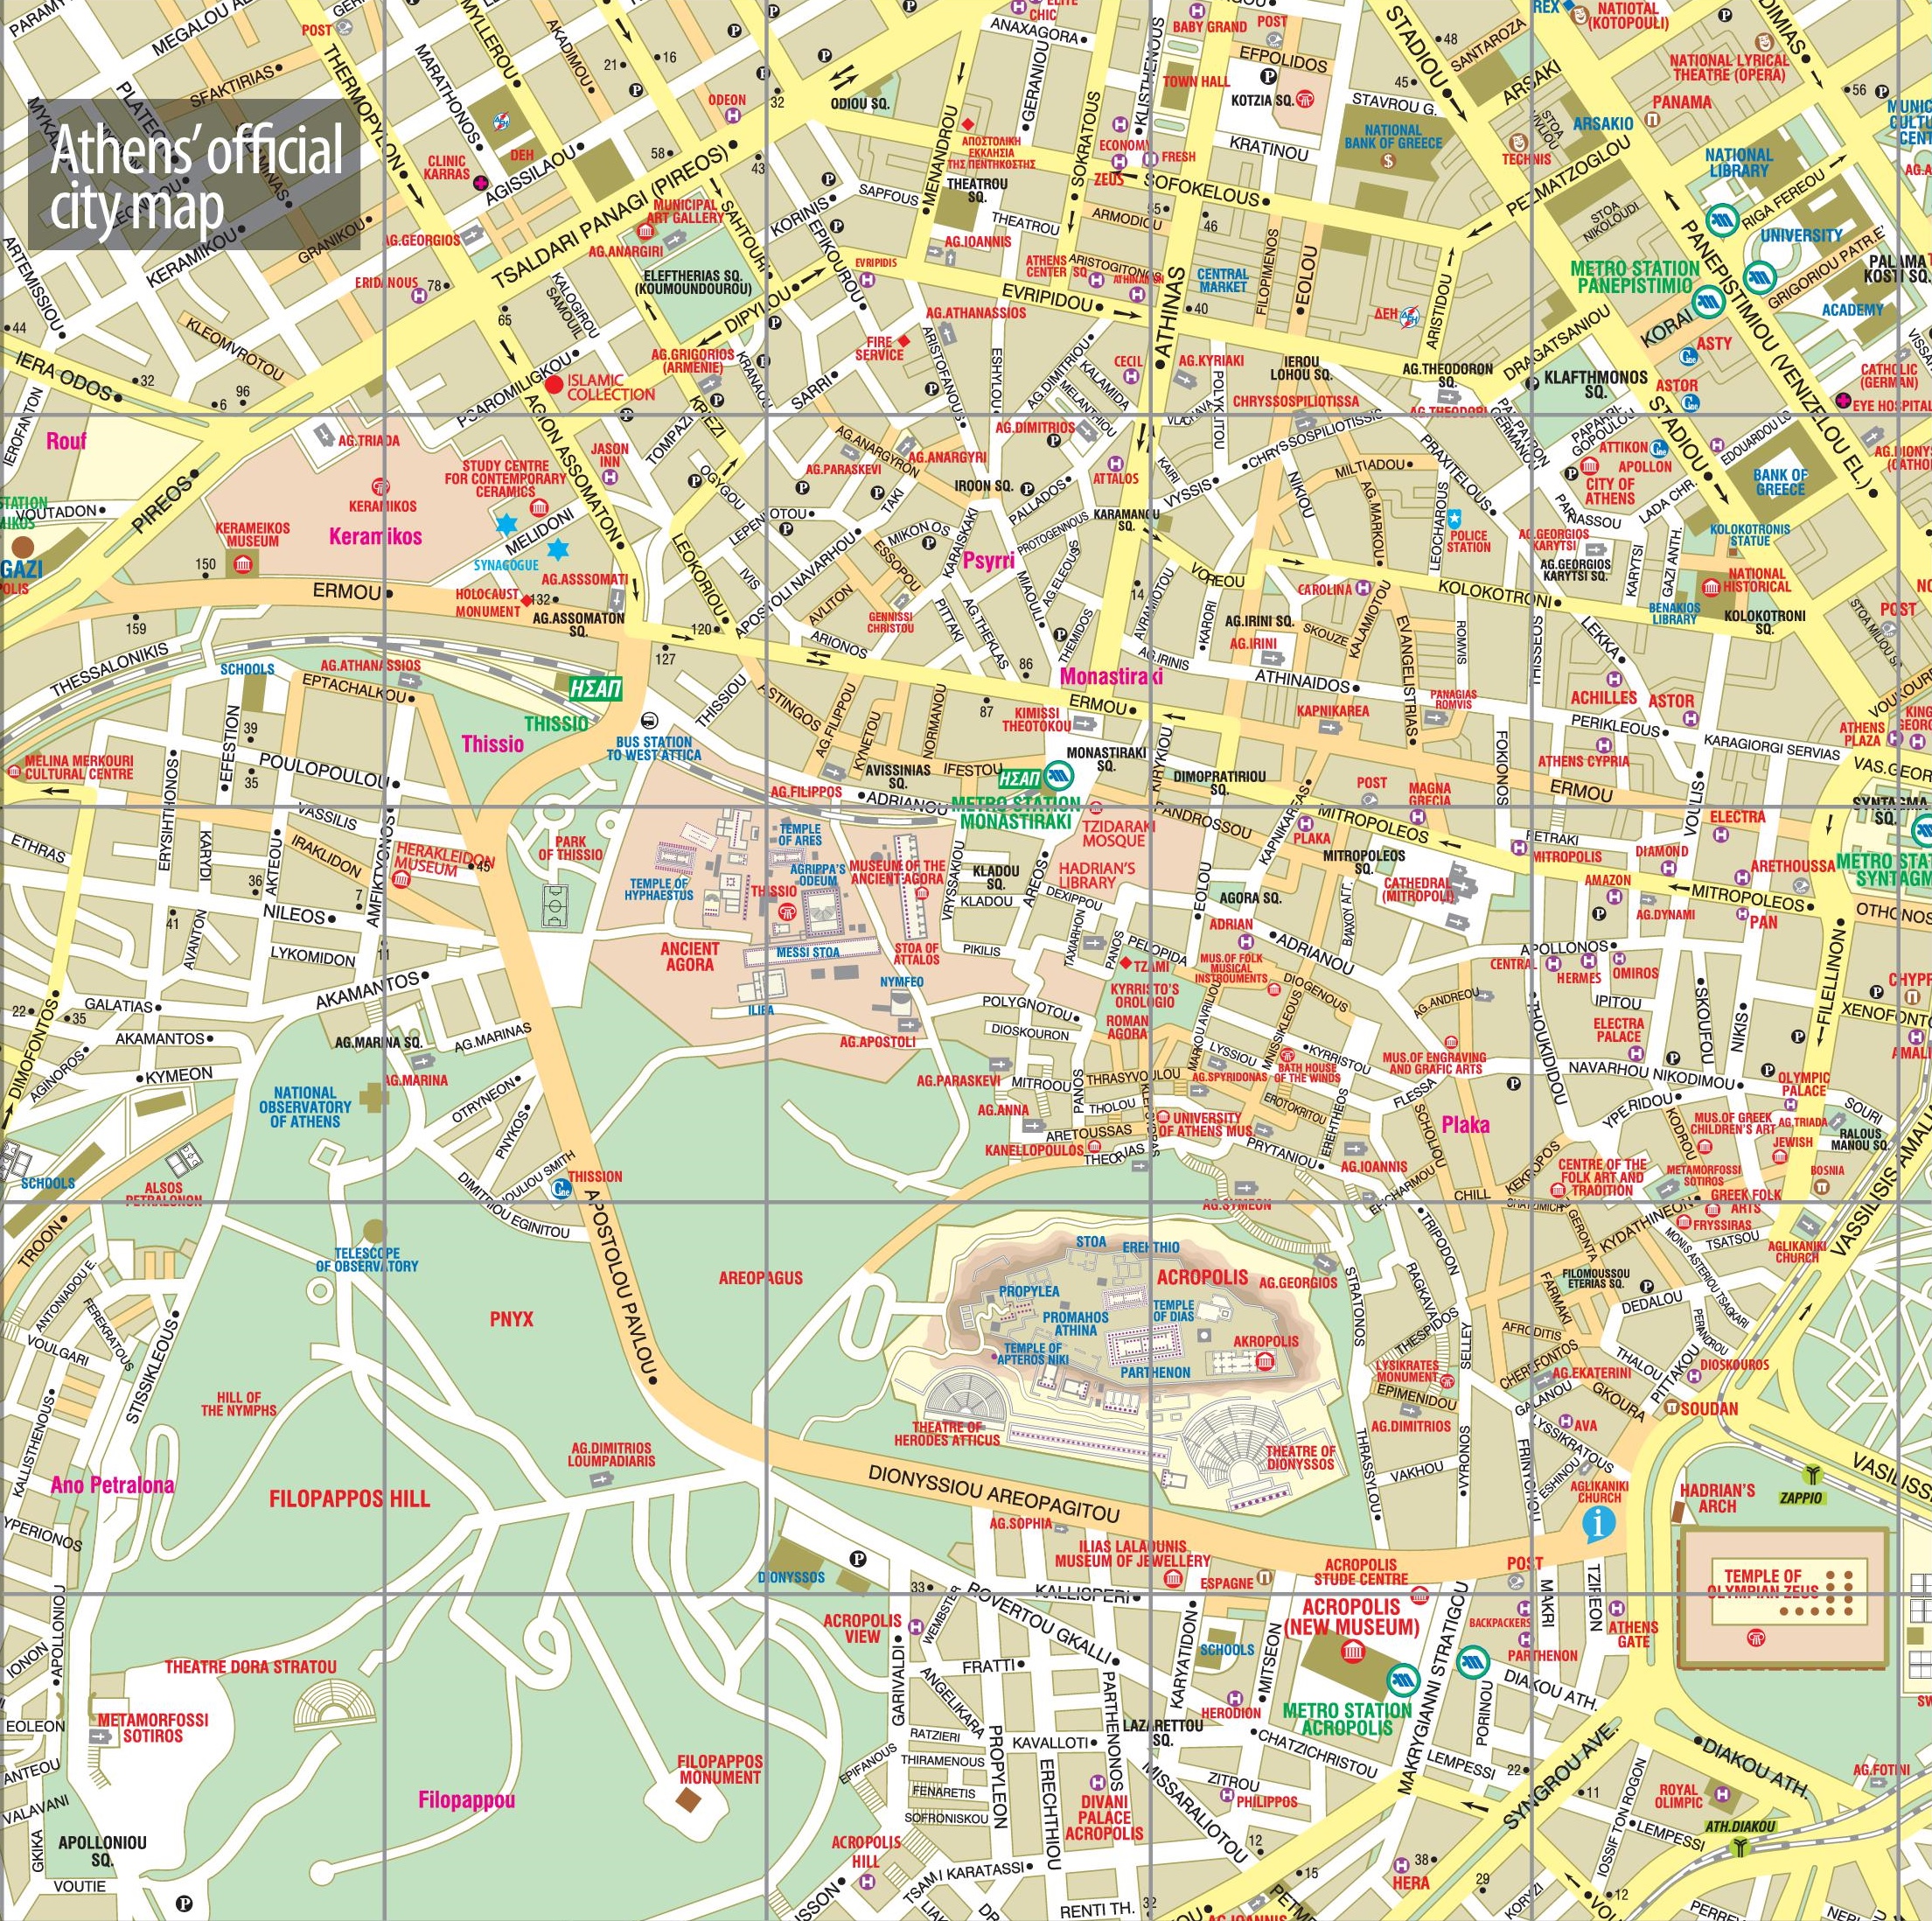 guter, übersichtlicher Stadtplan von Athen, bereitgestellt von http://ontheworldmap.com